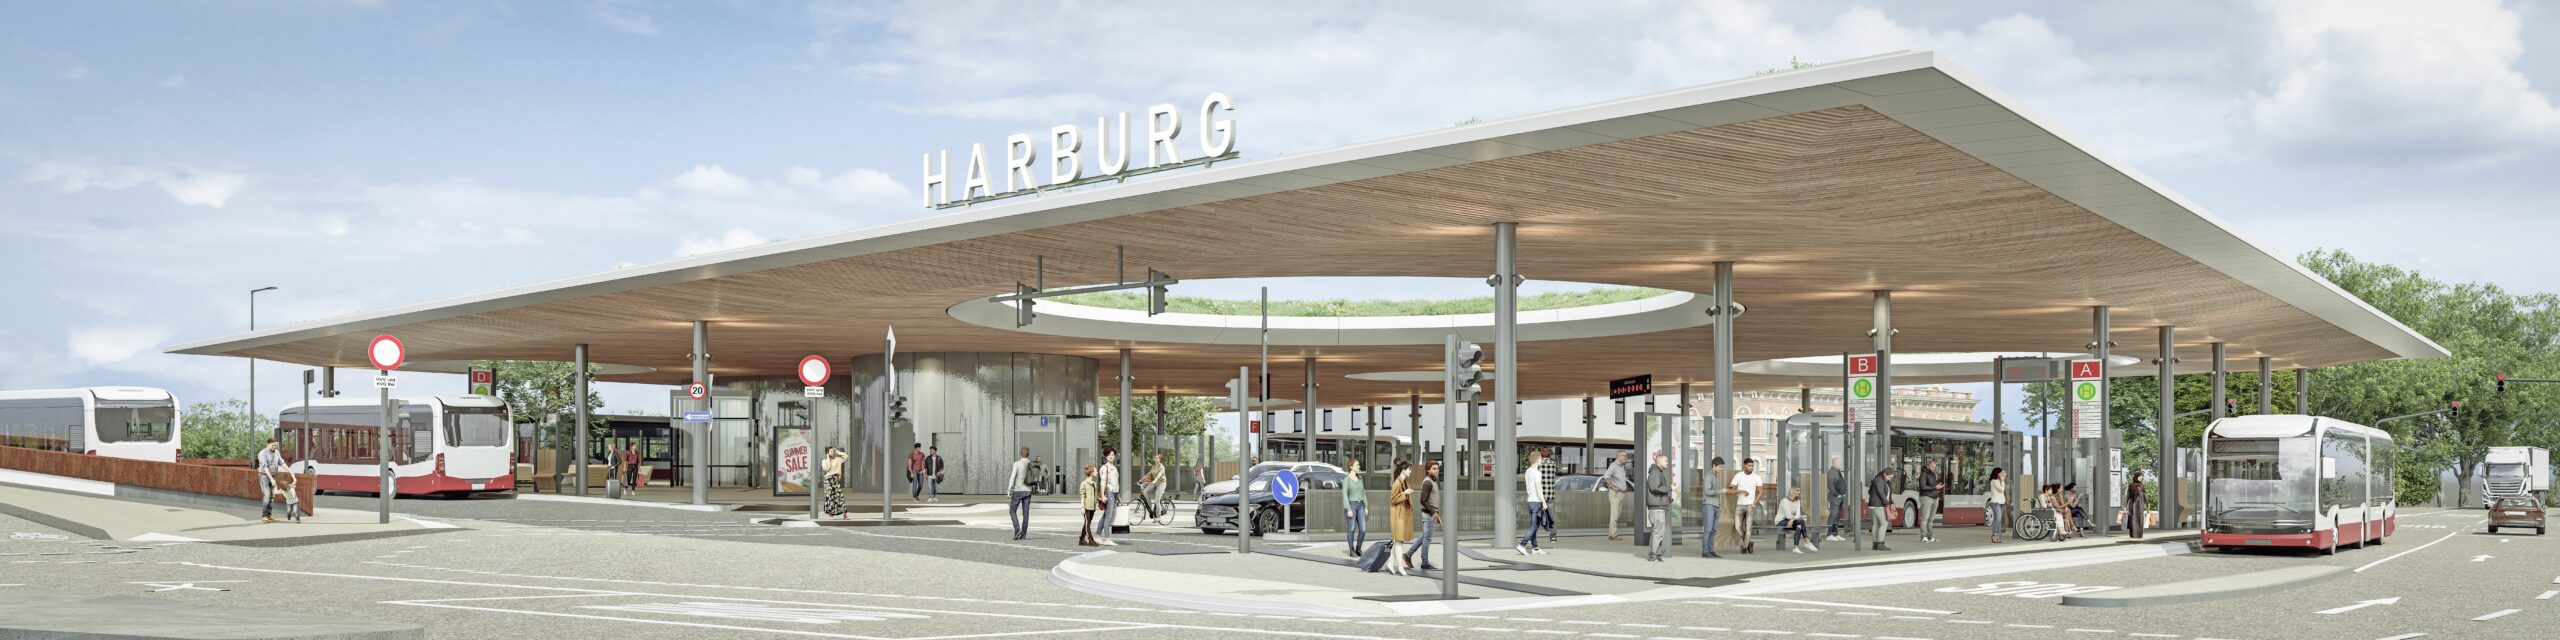 Der neue ZOB Harburg bekommt ein von schmalen Säulen getragenes, riesiges Dach.